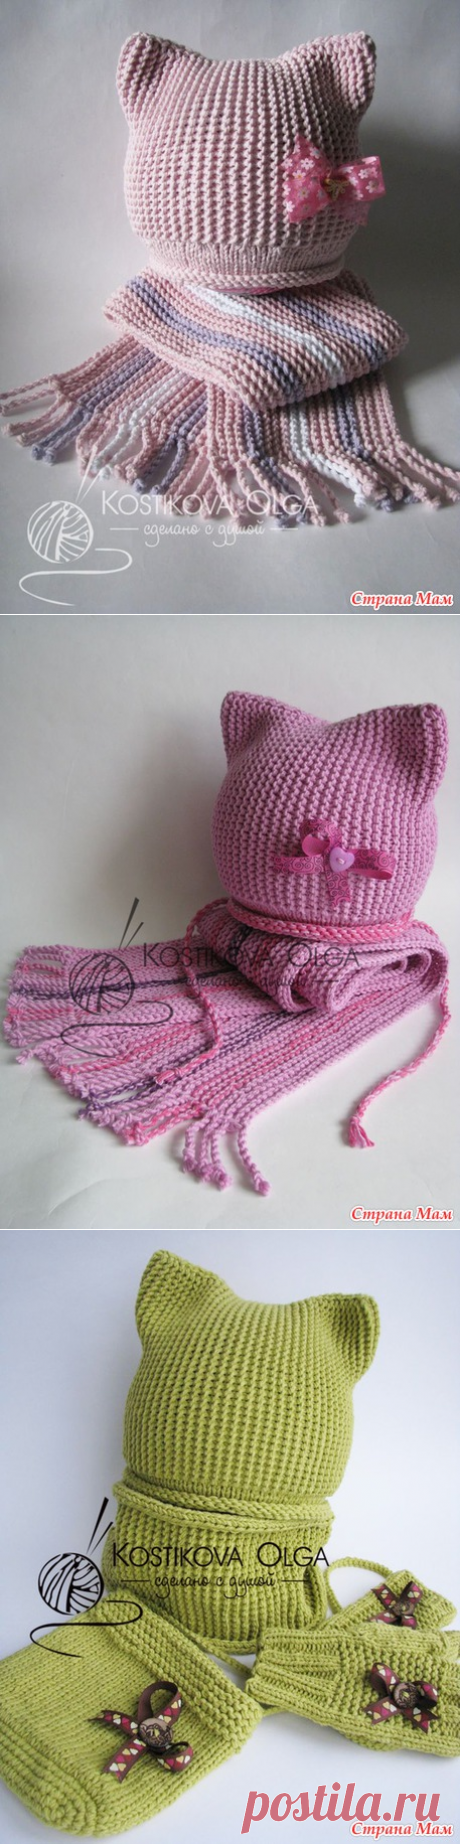 Два милых комплекта с описанием + свежая идея от меня для окончания шарфика - Вязание - Страна Мам